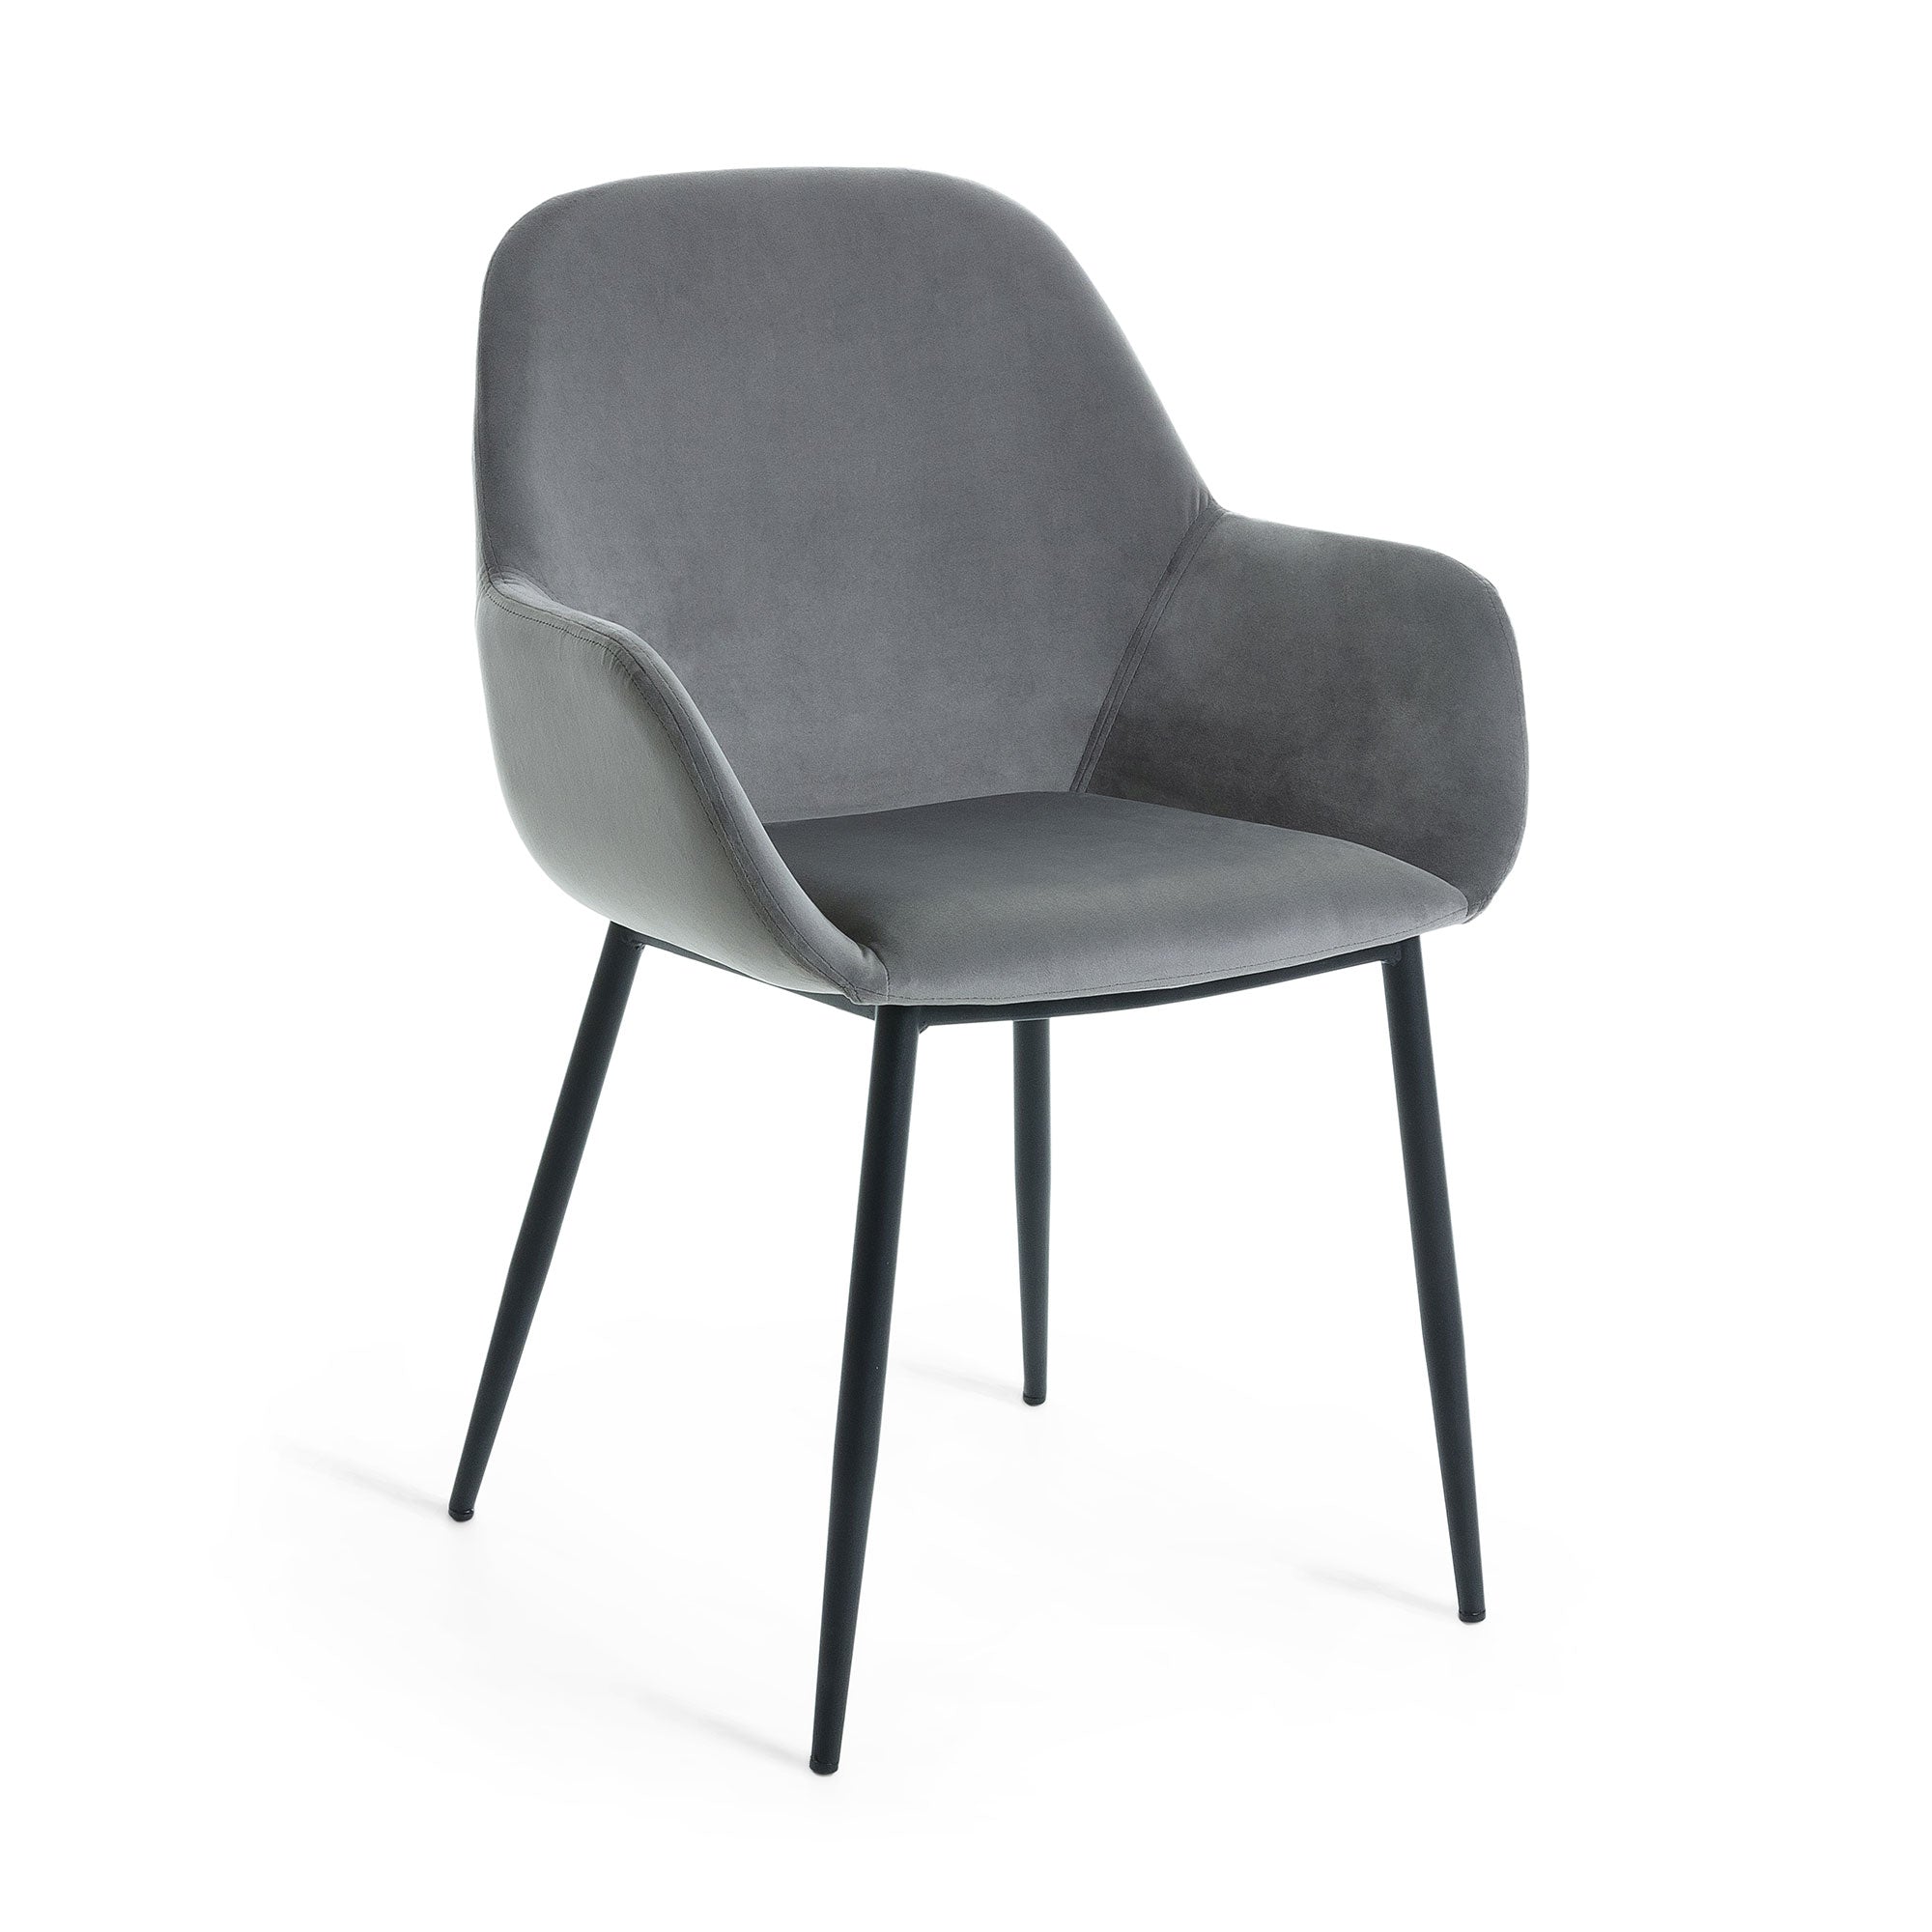 Konna grey velvet chair